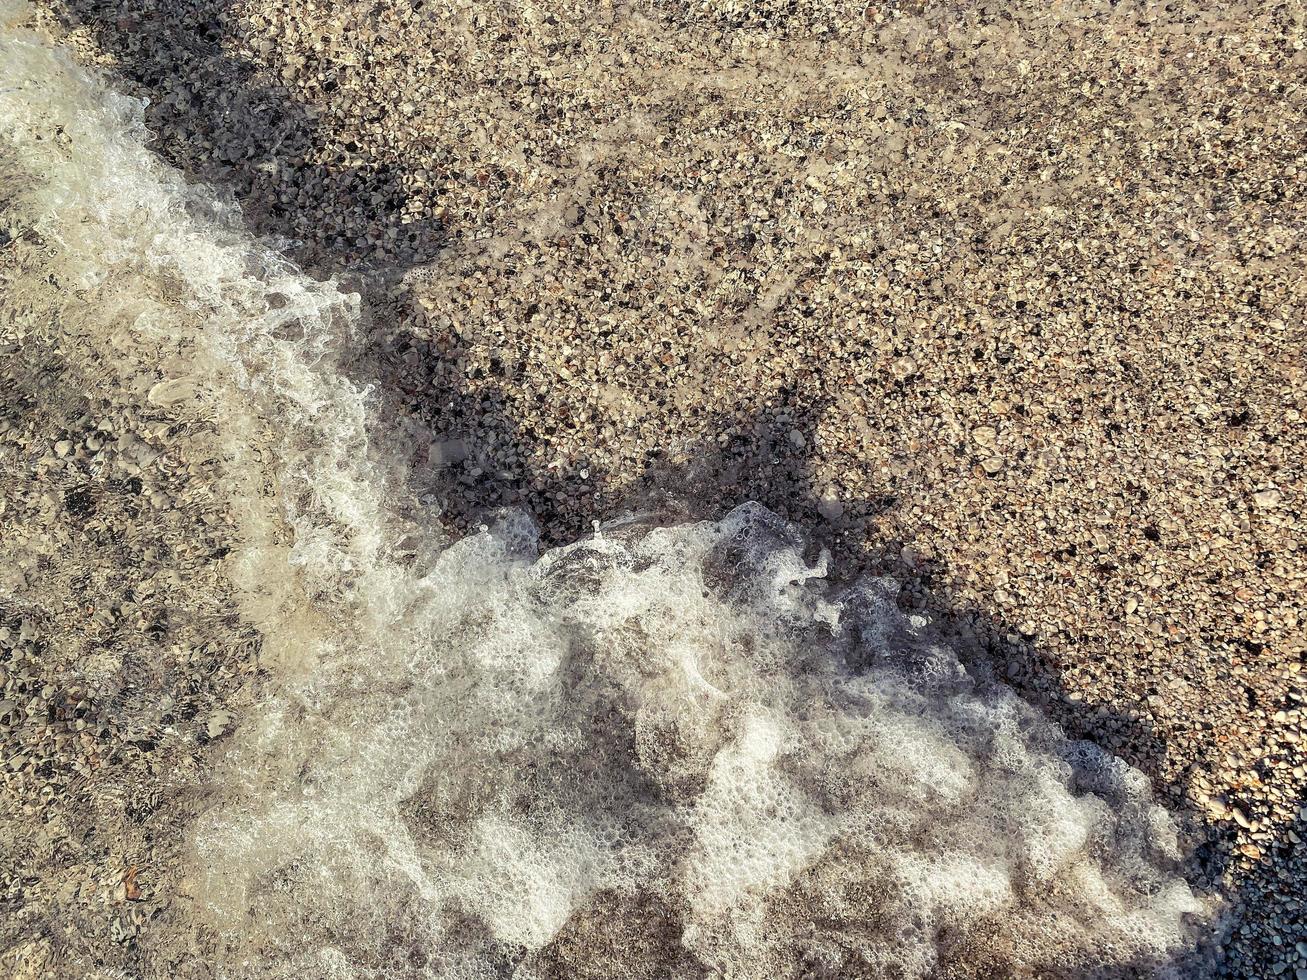 vague de mer, écume près du rivage. côte de la mer, plage de sable avec eau salée. étendue de la mer, écume d'eau bouillonnante photo